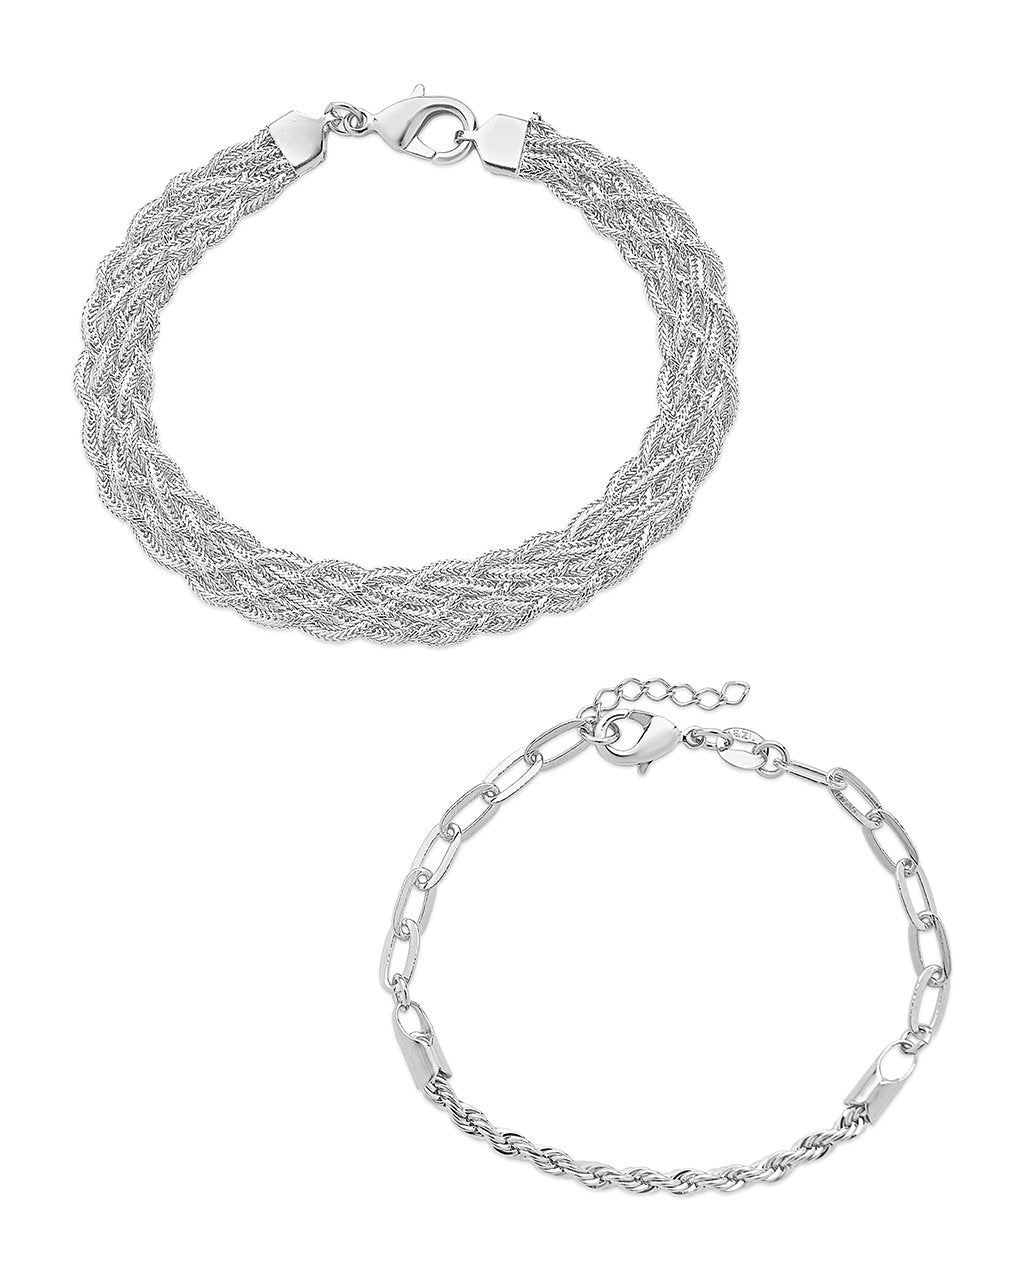 Braided & Woven Bracelet Set of 2 Bracelet Sterling Forever Silver 